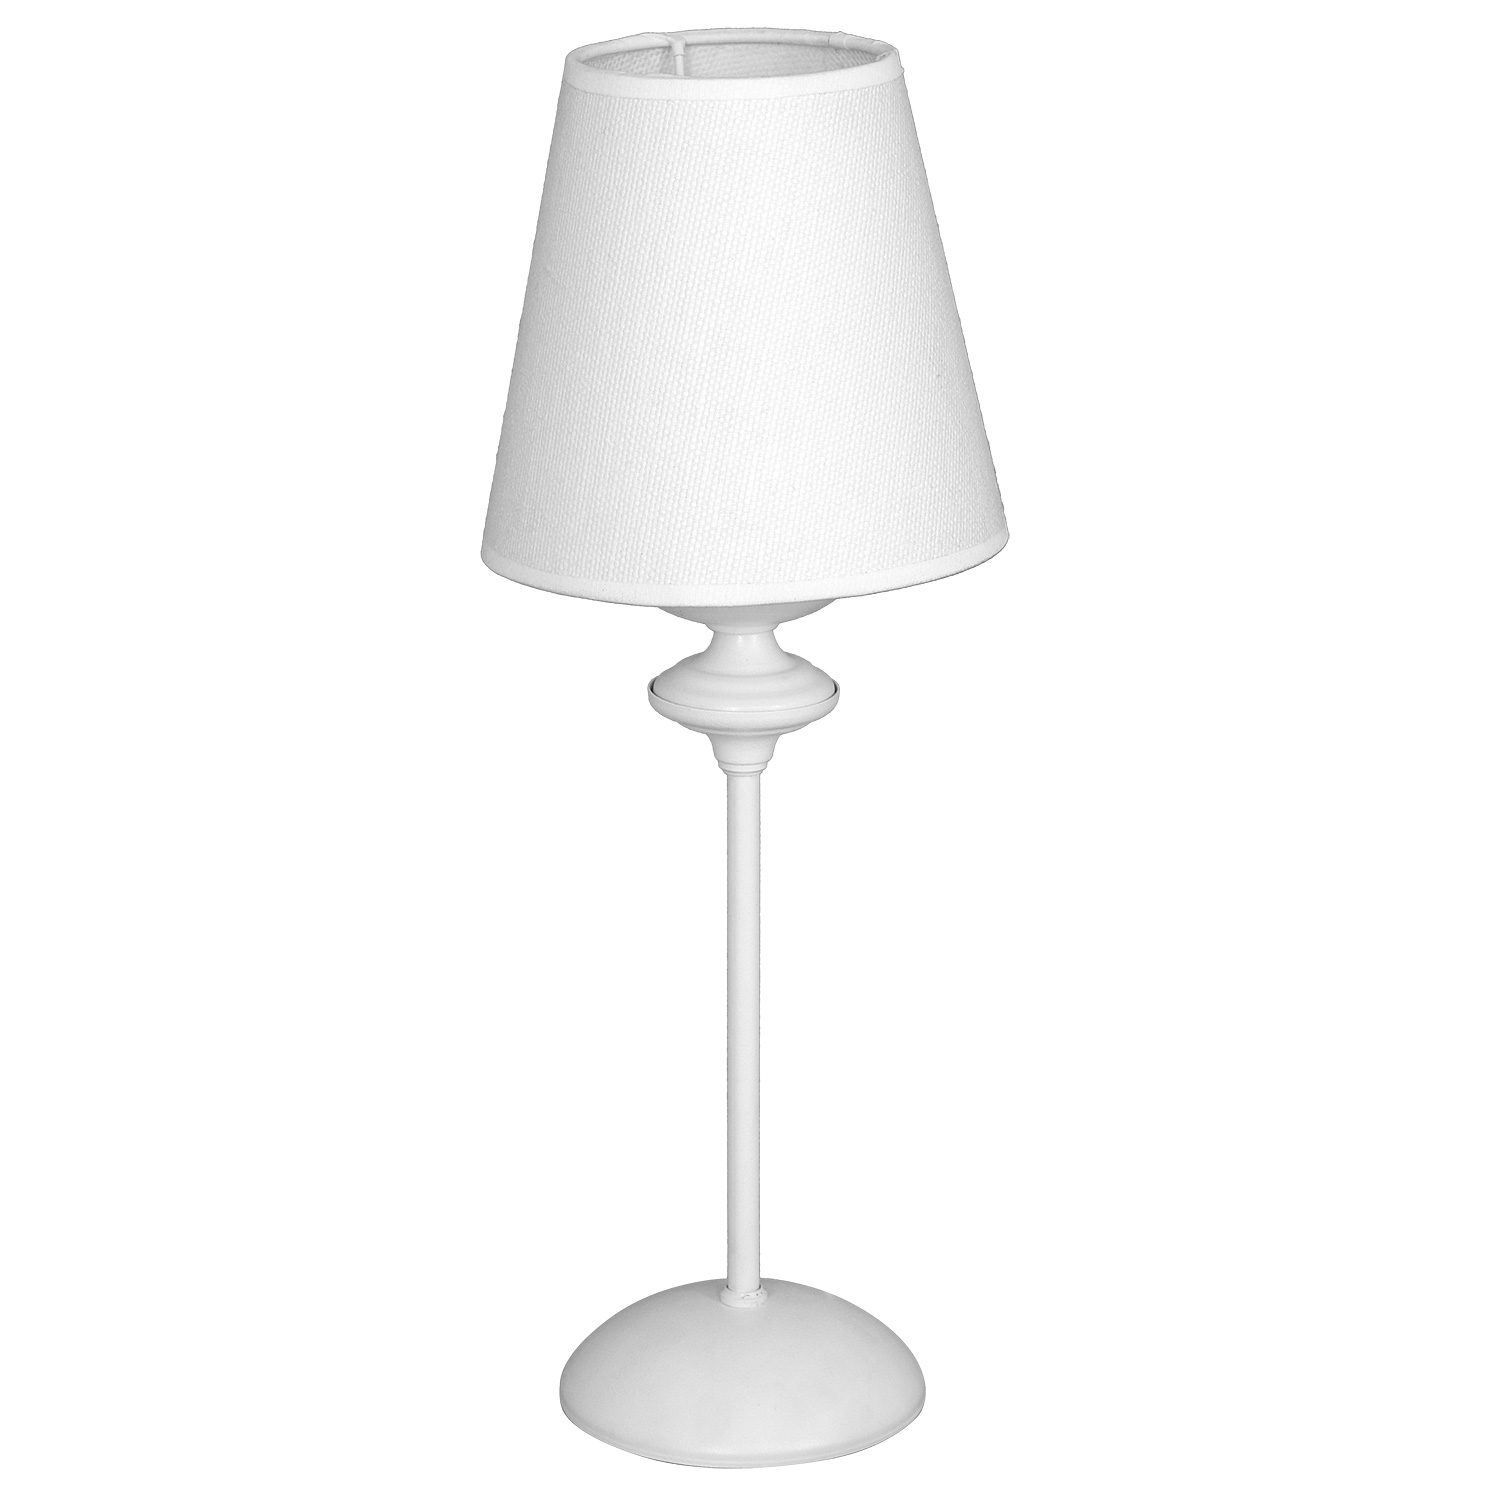 biala-lampka-stolowa-lampa-nocna-biala-lampka-nocna-lampka-nocna-w-stylu-francuskim-francuskie-wnetrza-francuskie-dodatki-minimalistyczna-lampka-stolowa